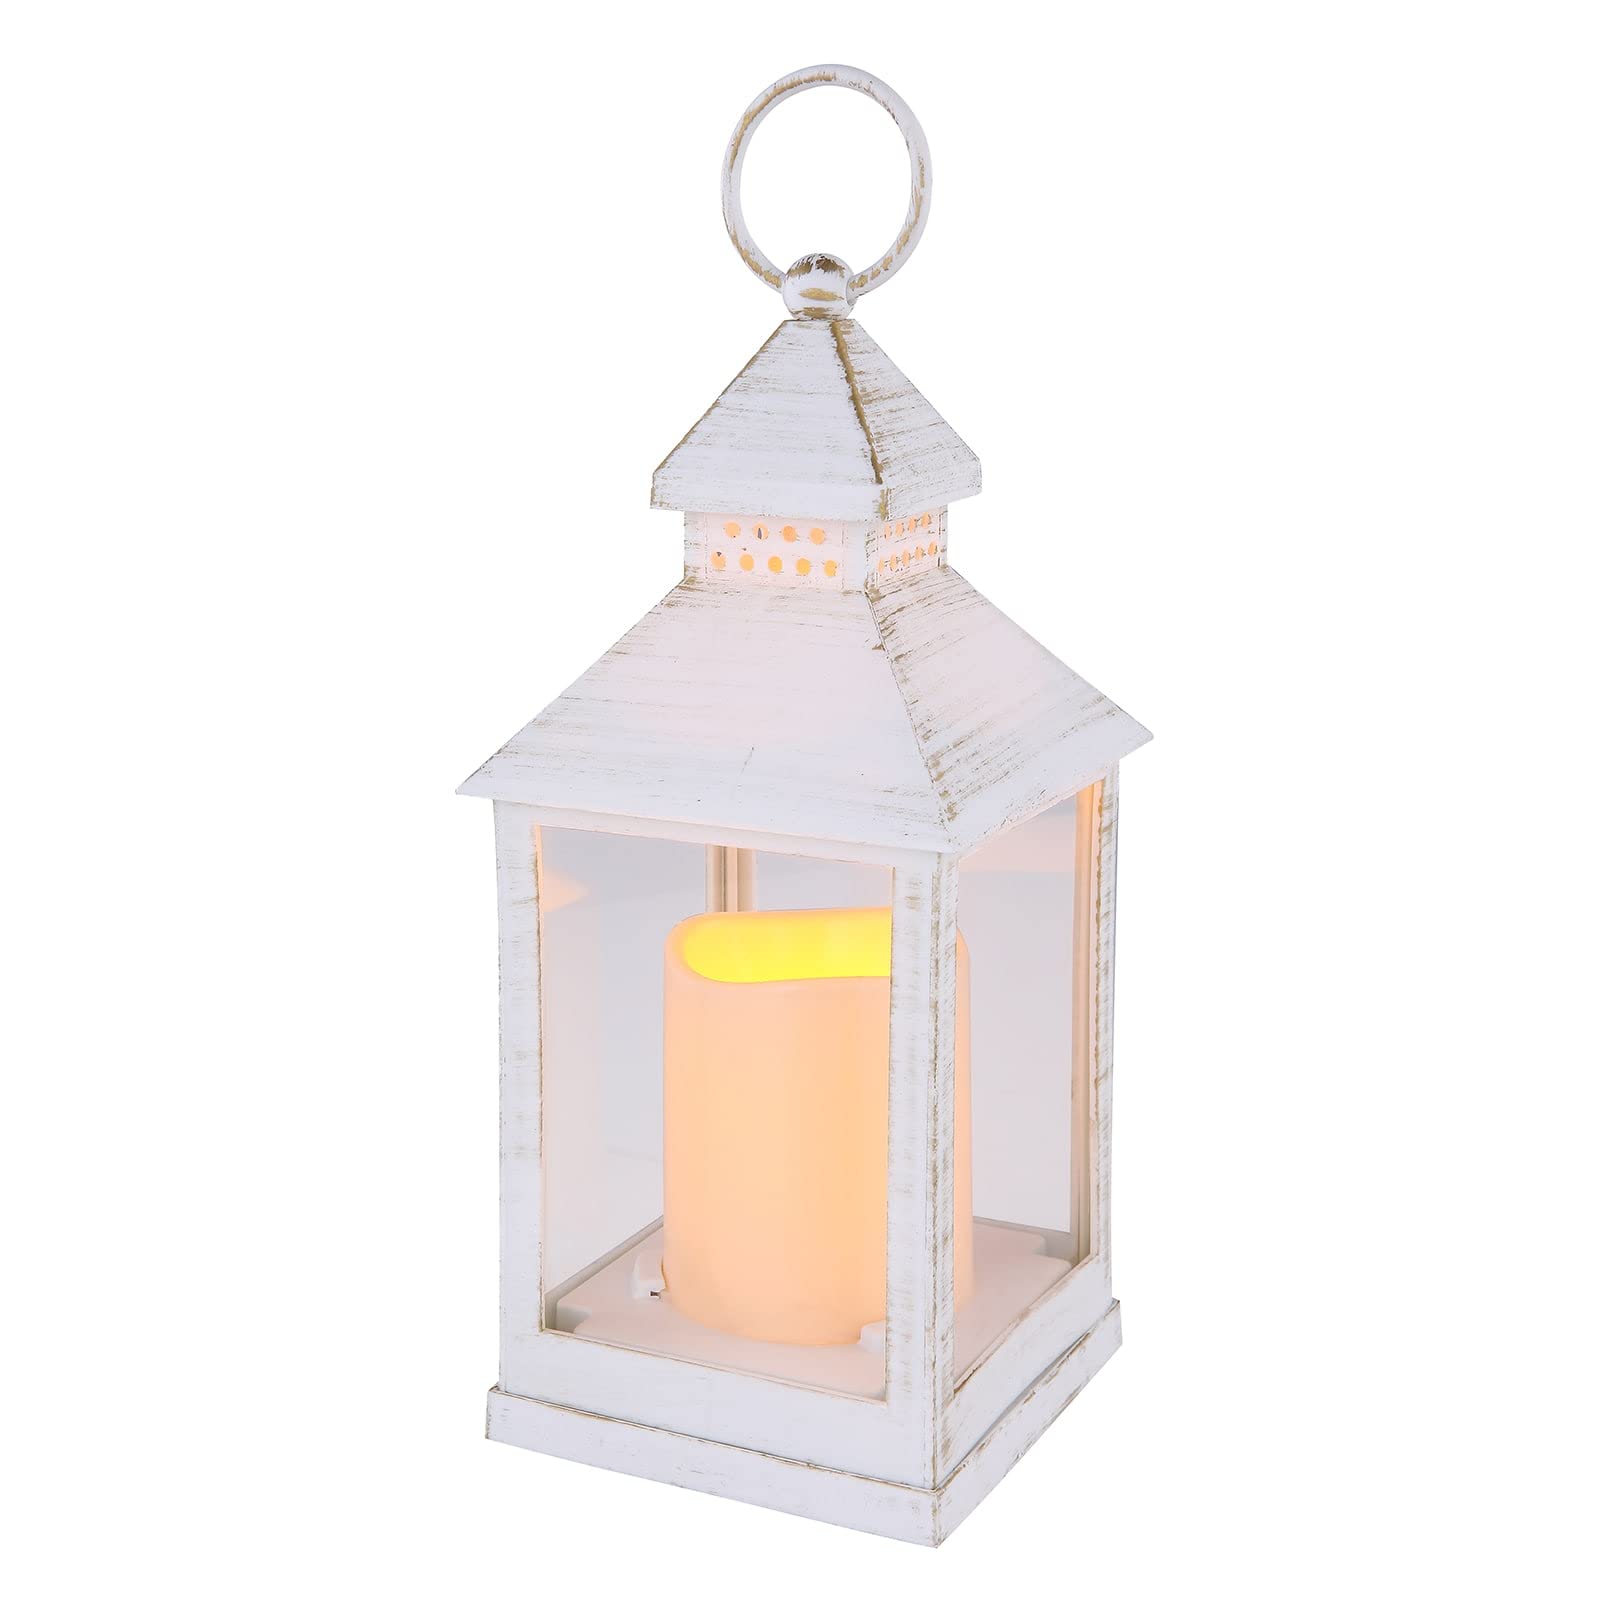 Eaxus® 4er Set Blaze-it LED Laterne - Windlicht mit Realistischem Flammeneffekt und Echtglas, Shabby Chic Weiß